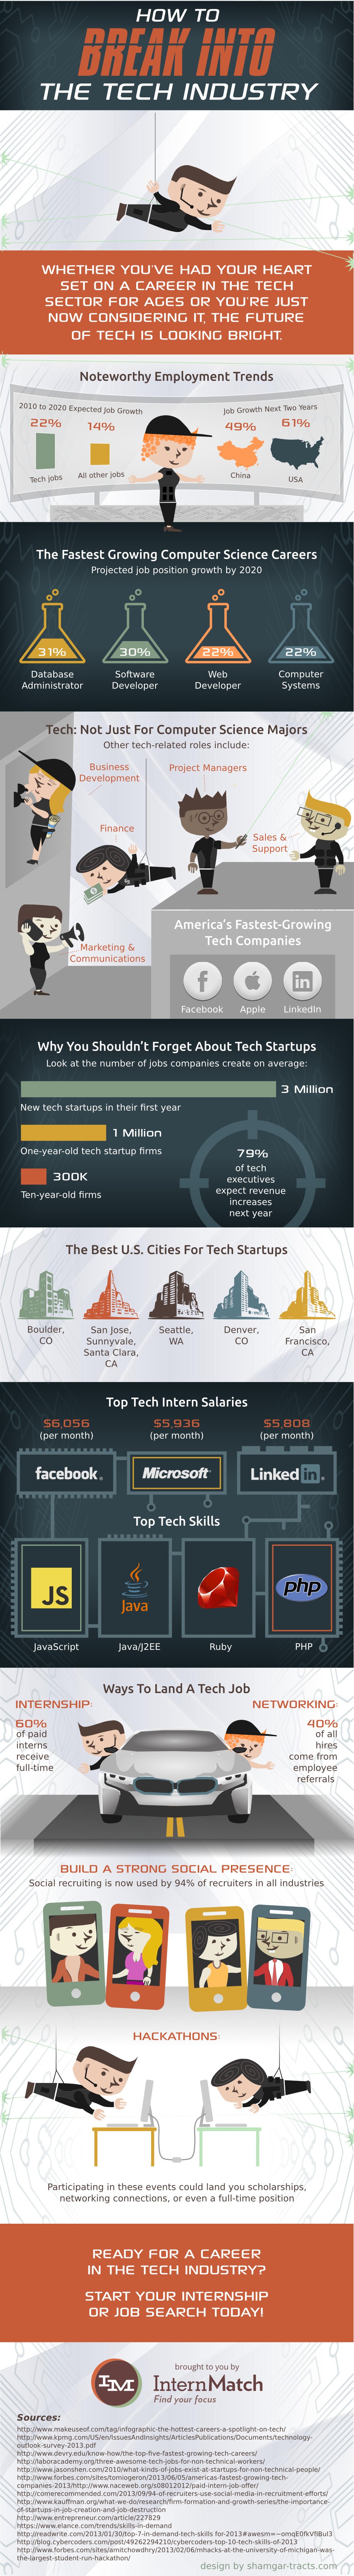 tech-startup-jobs-resumebear